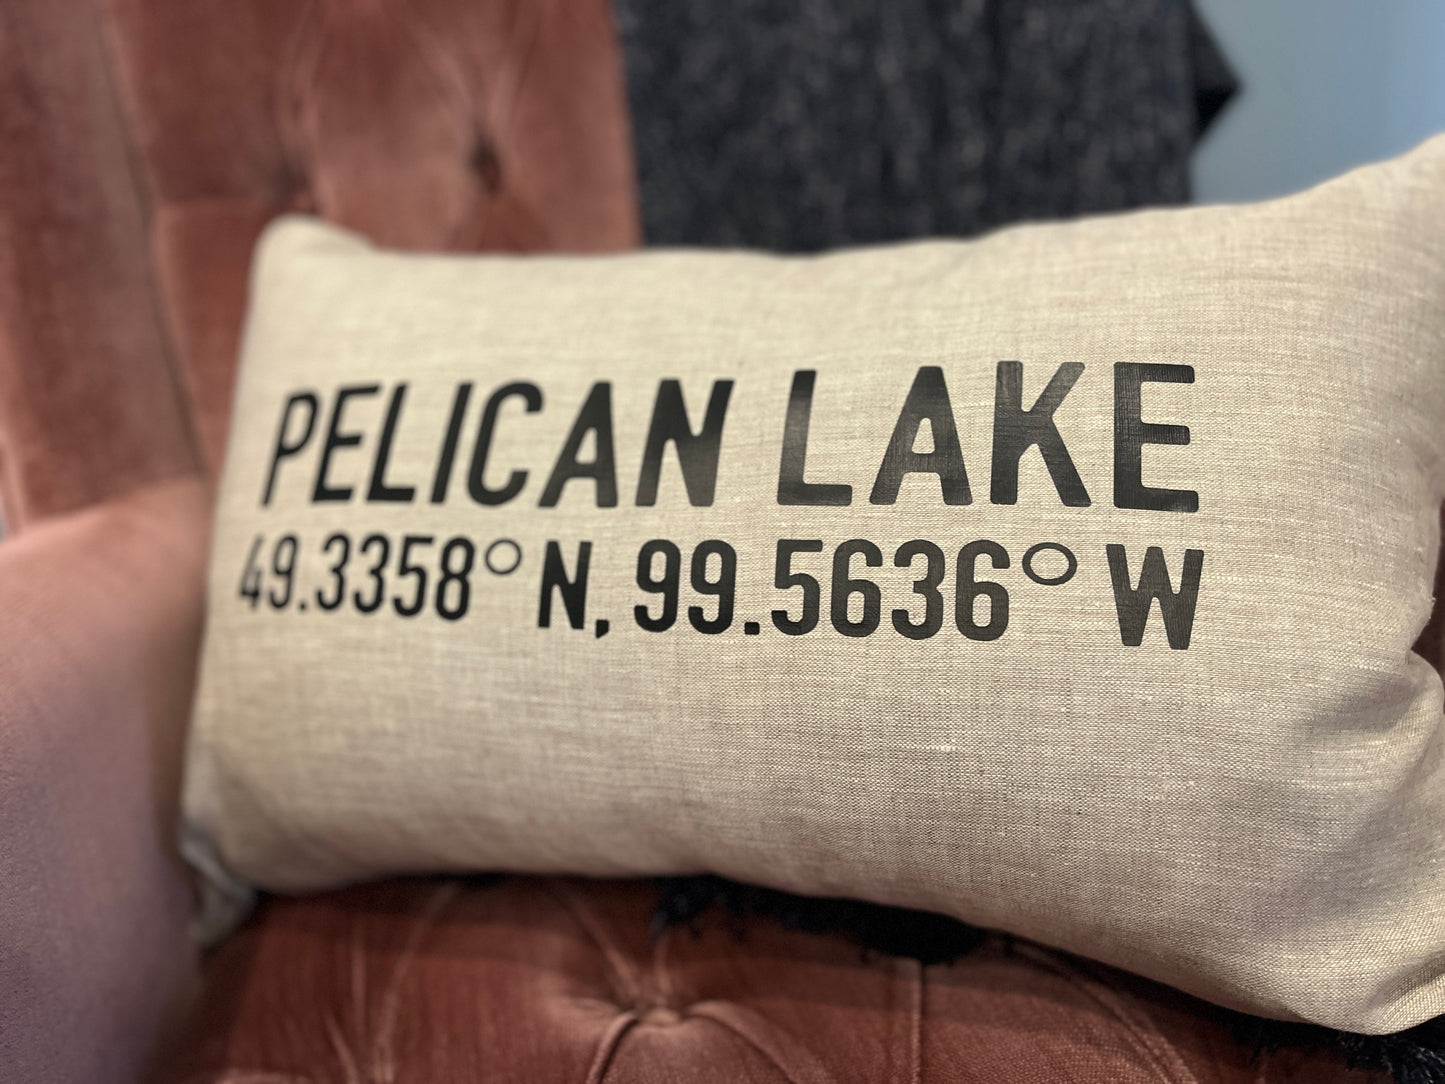 Pelican Lake Pillow